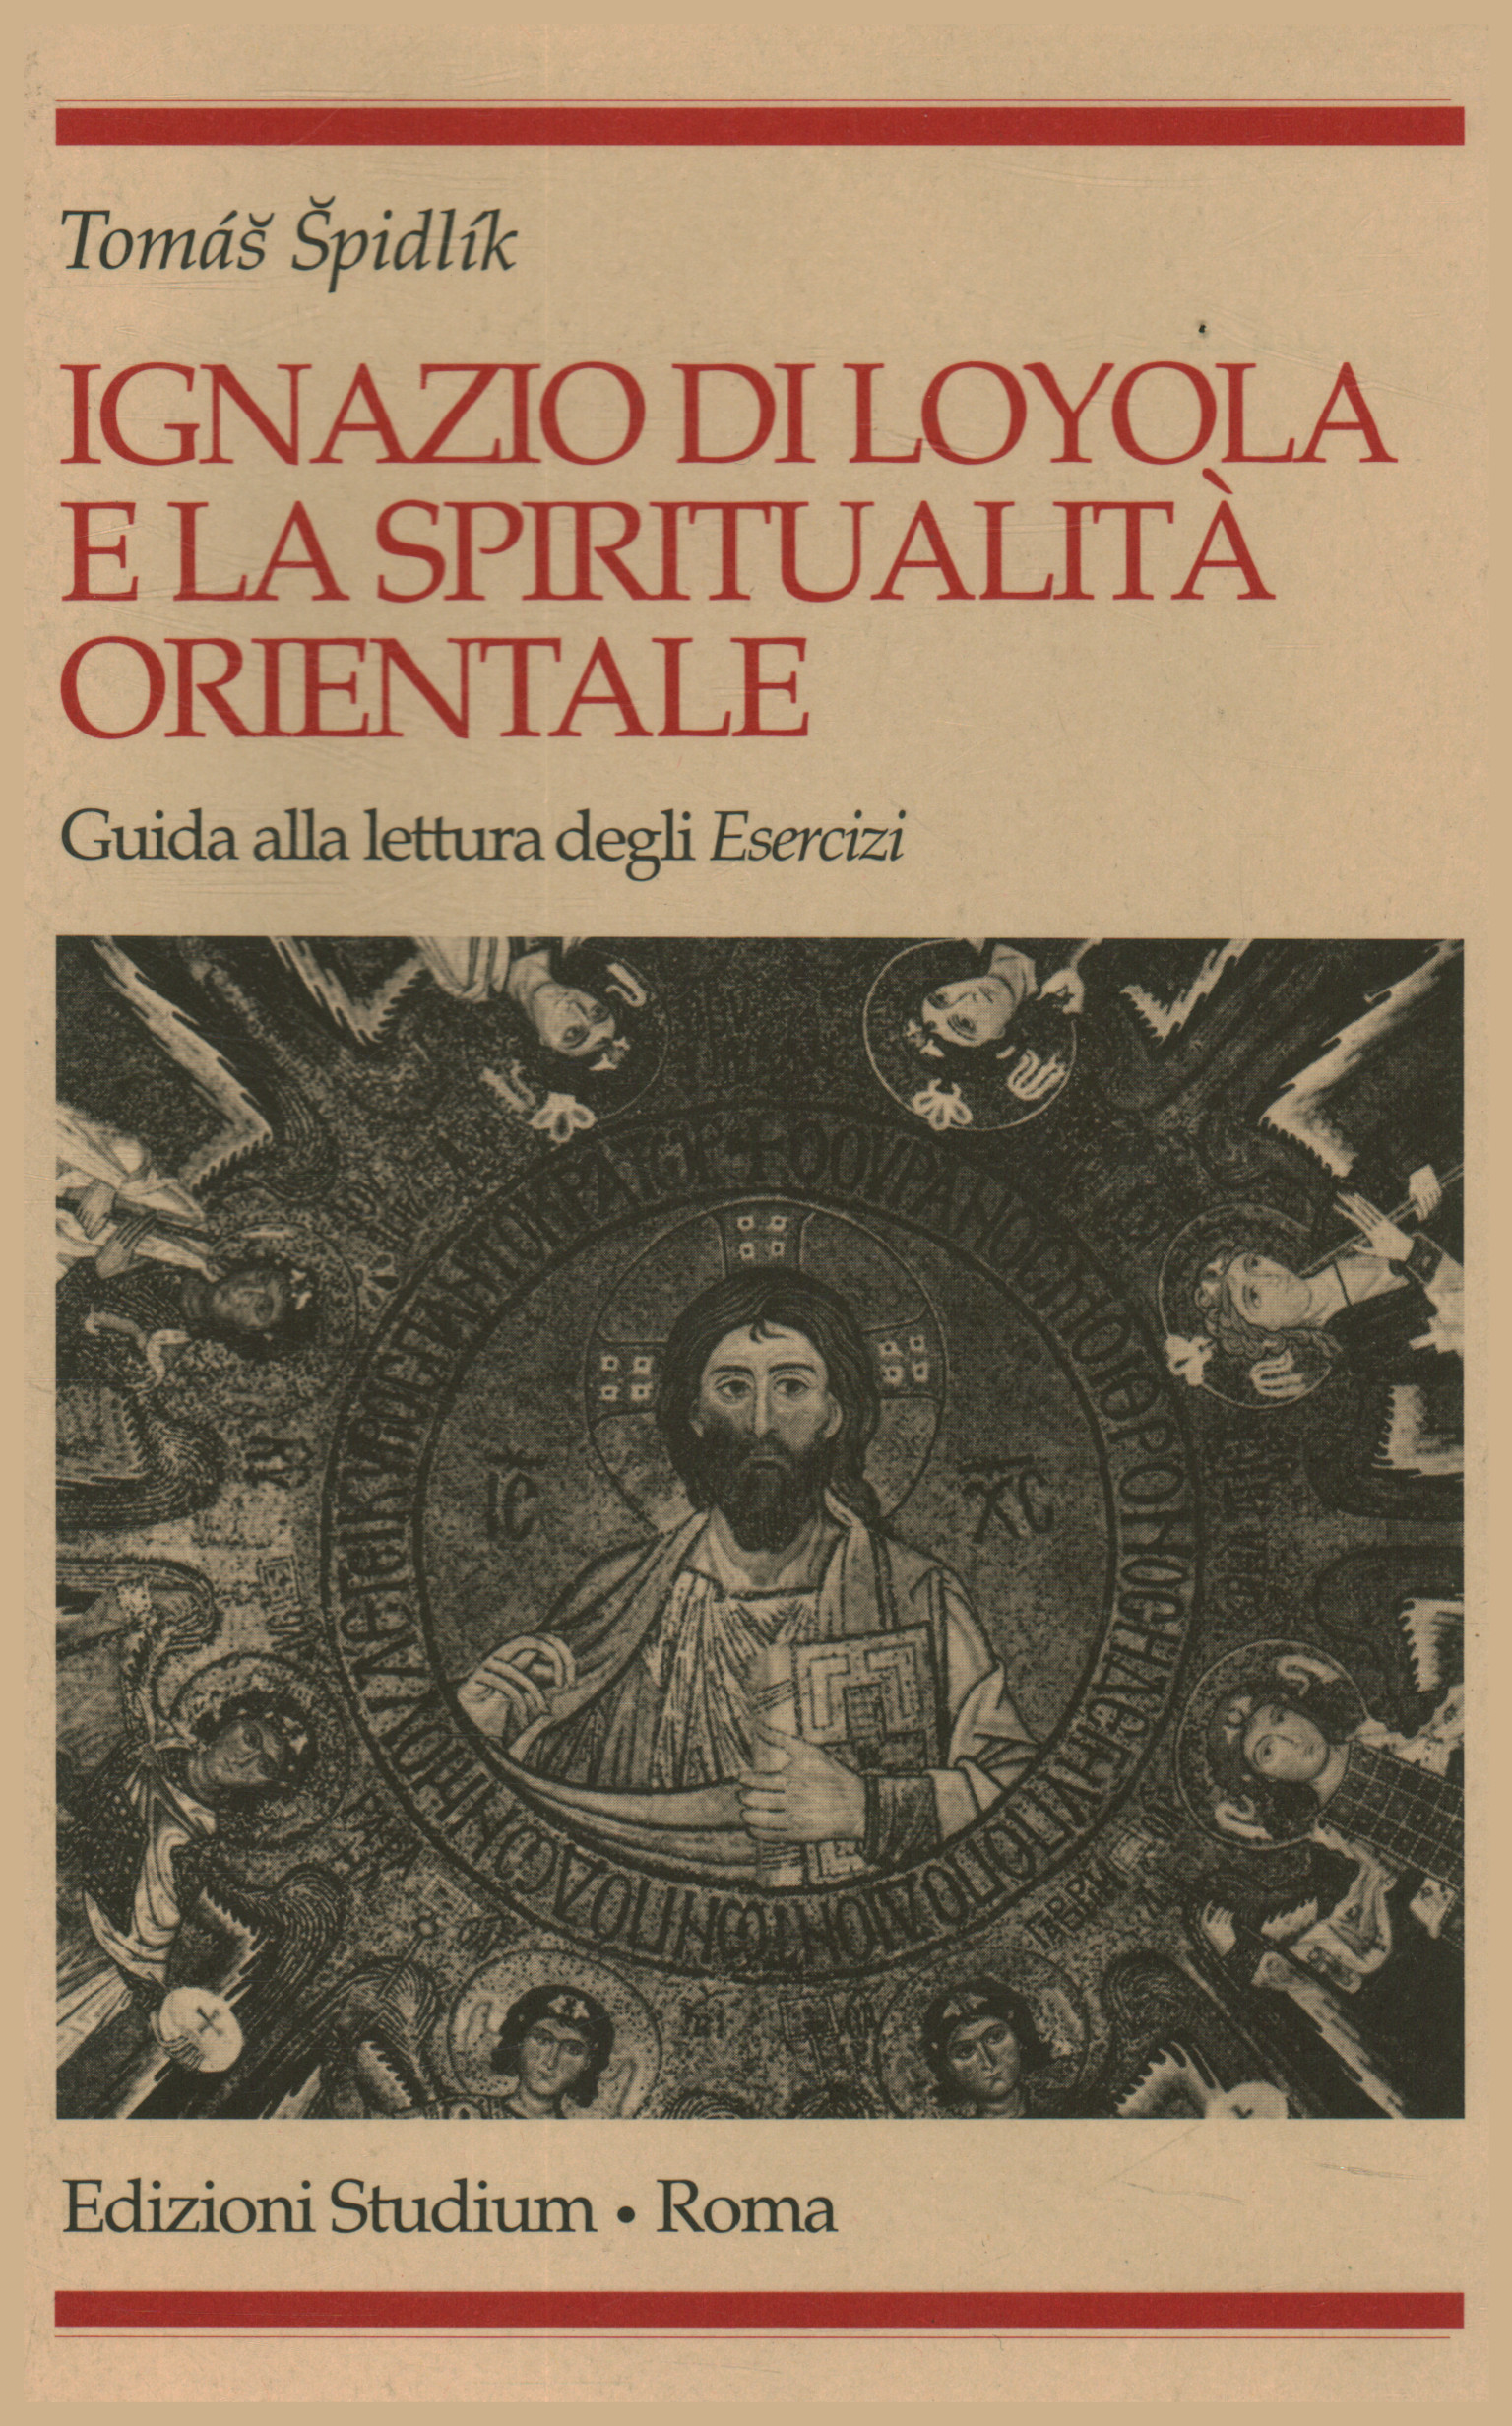 Ignacio de Loyola y la espiritualidad